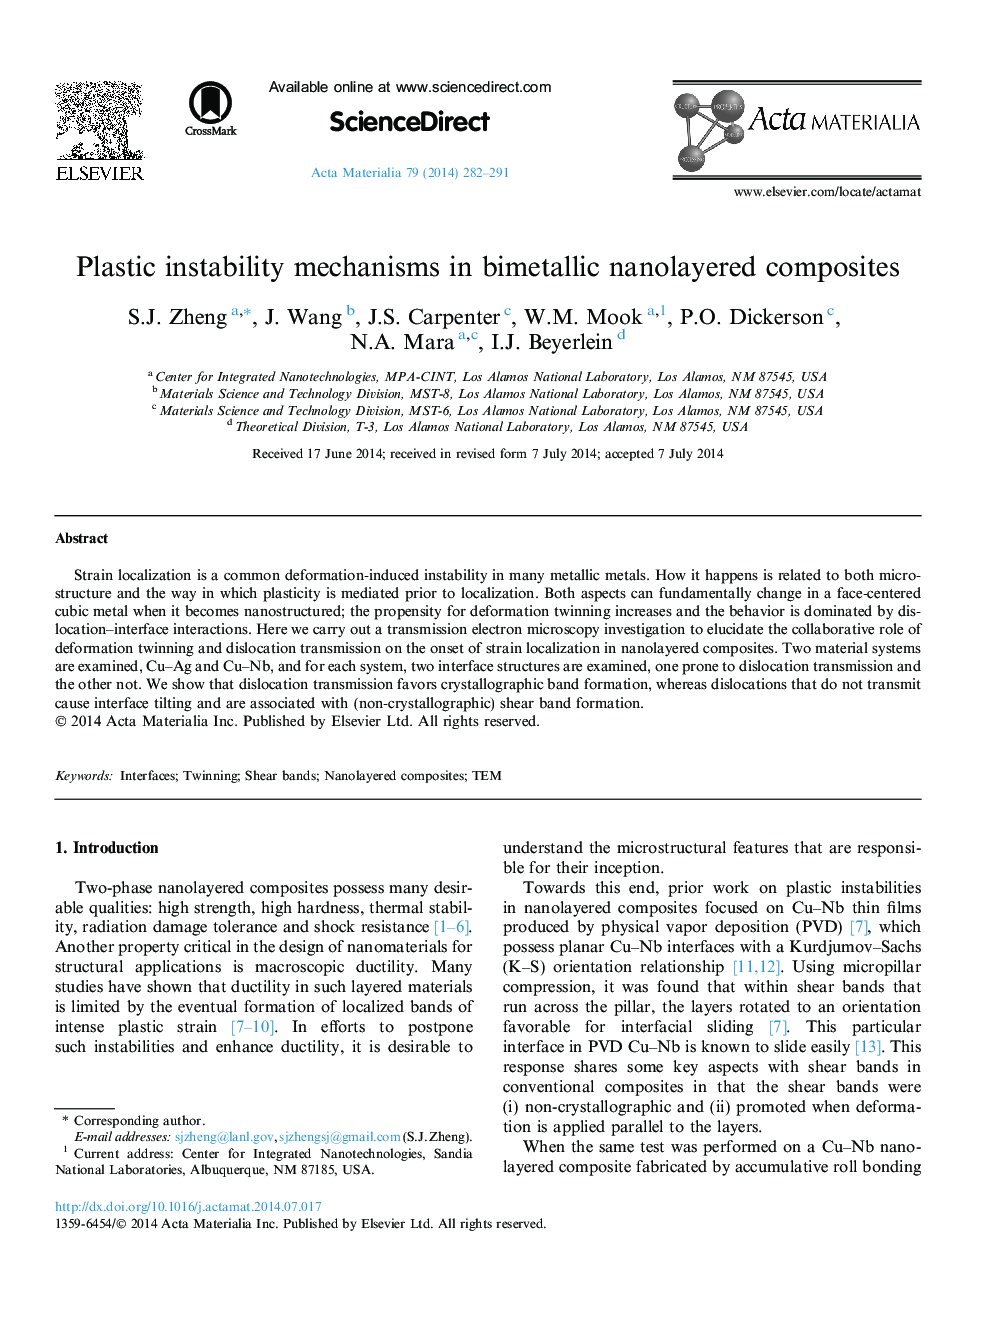 مکانیسم های بی ثباتی پلاستیک در کامپوزیت های نانو الیه های دوار فلزی 